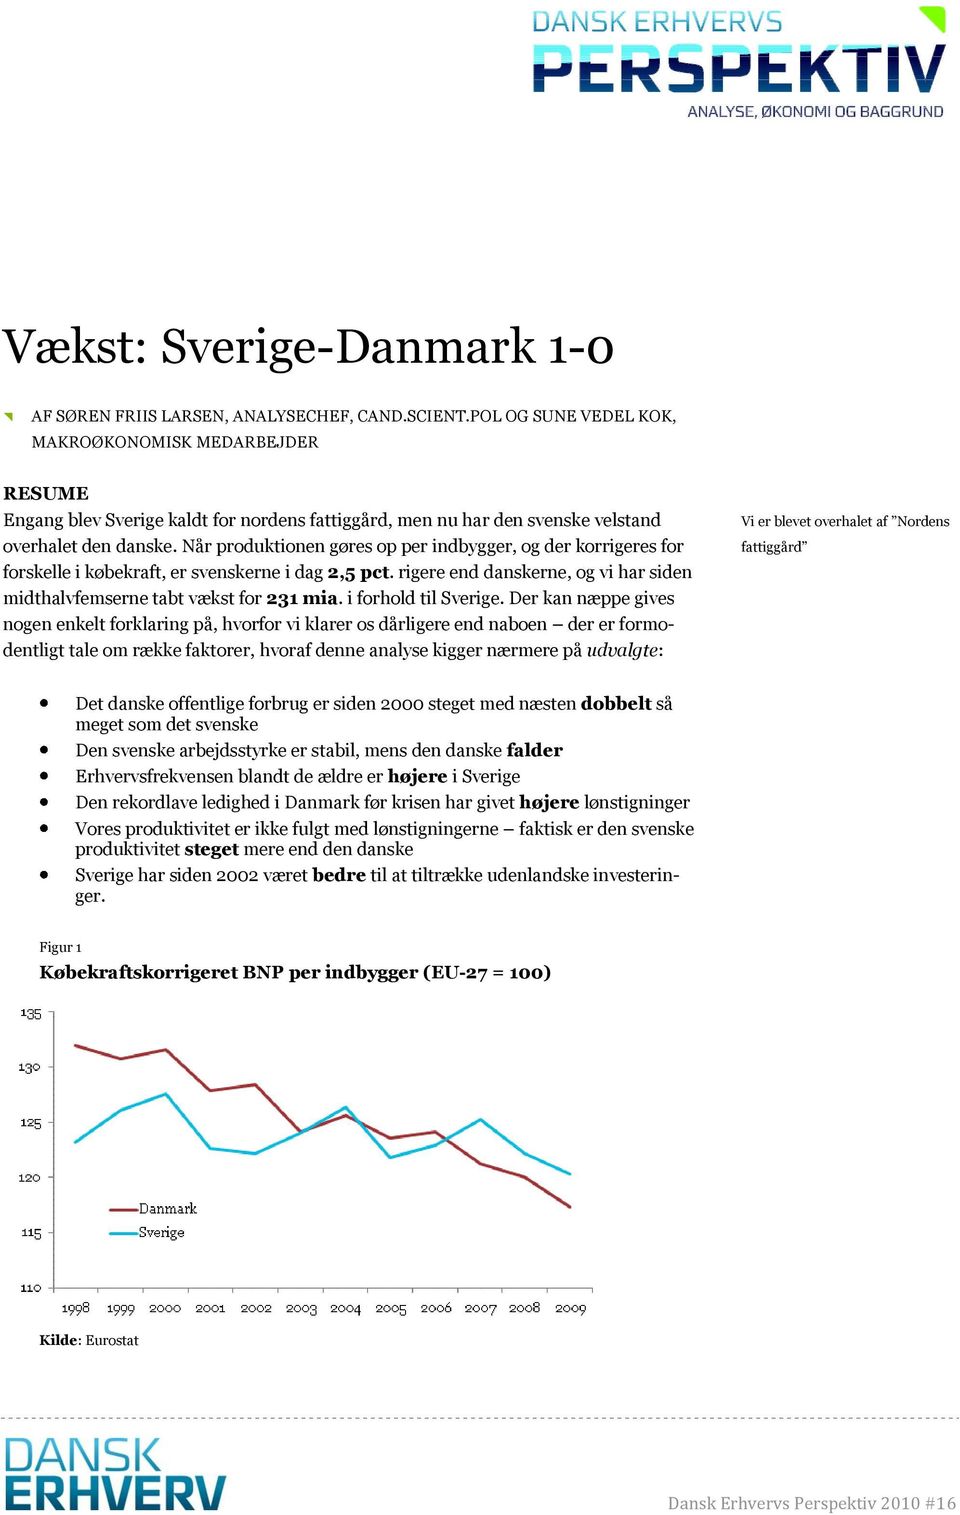 Når produktionen gøres op per indbygger, og der korrigeres for forskelle i købekraft, er svenskerne i dag 2,5 pct. rigere end danskerne, og vi har siden midthalvfemserne tabt vækst for 231 mia.